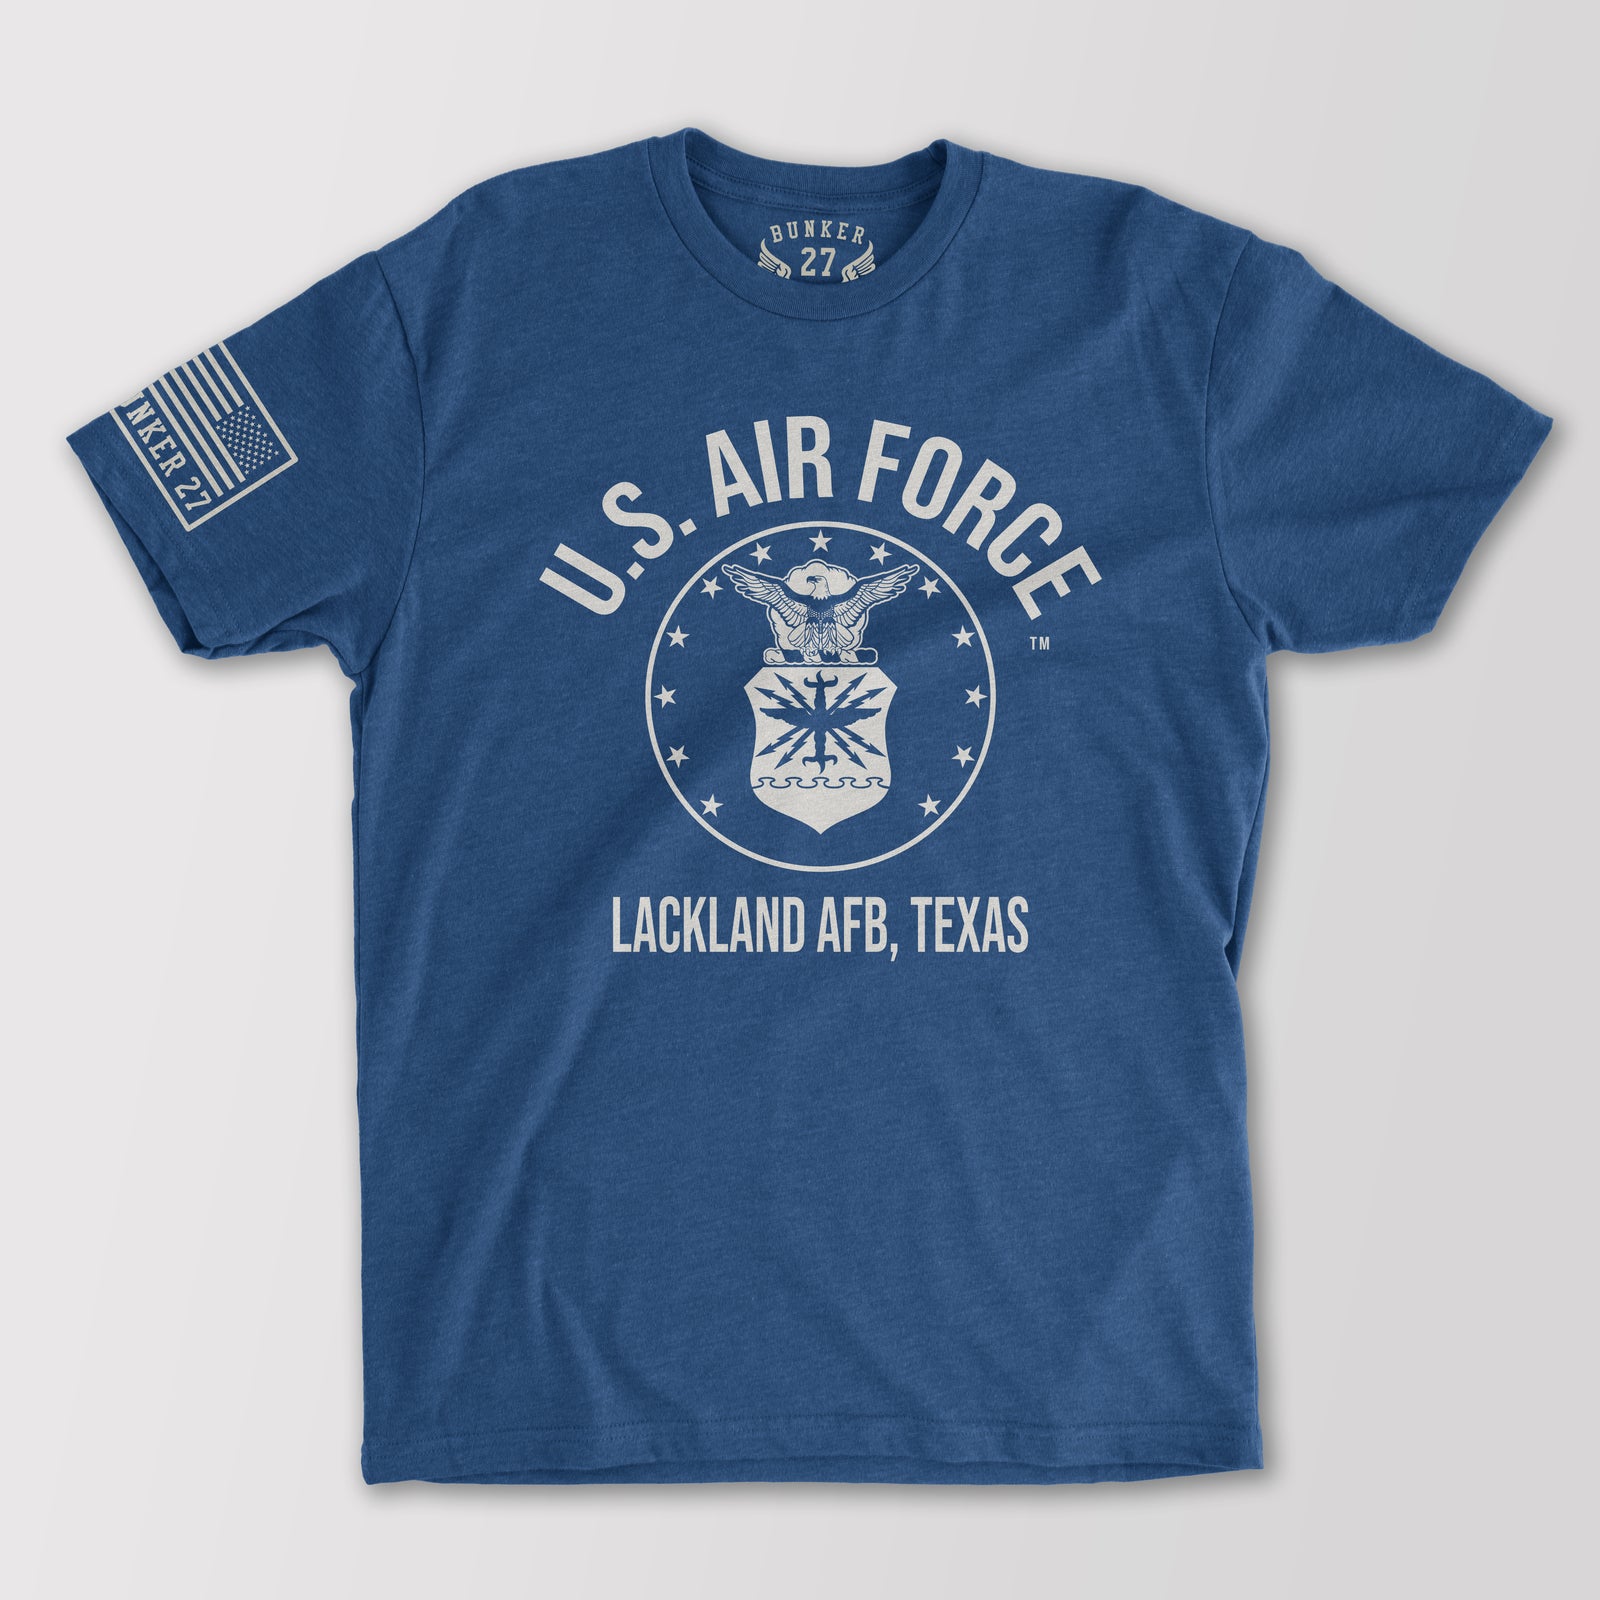 Lackland Air Force Base T-Shirts, tee, tshirt military squadron tshirts, Bunker 27, air force t-shirts